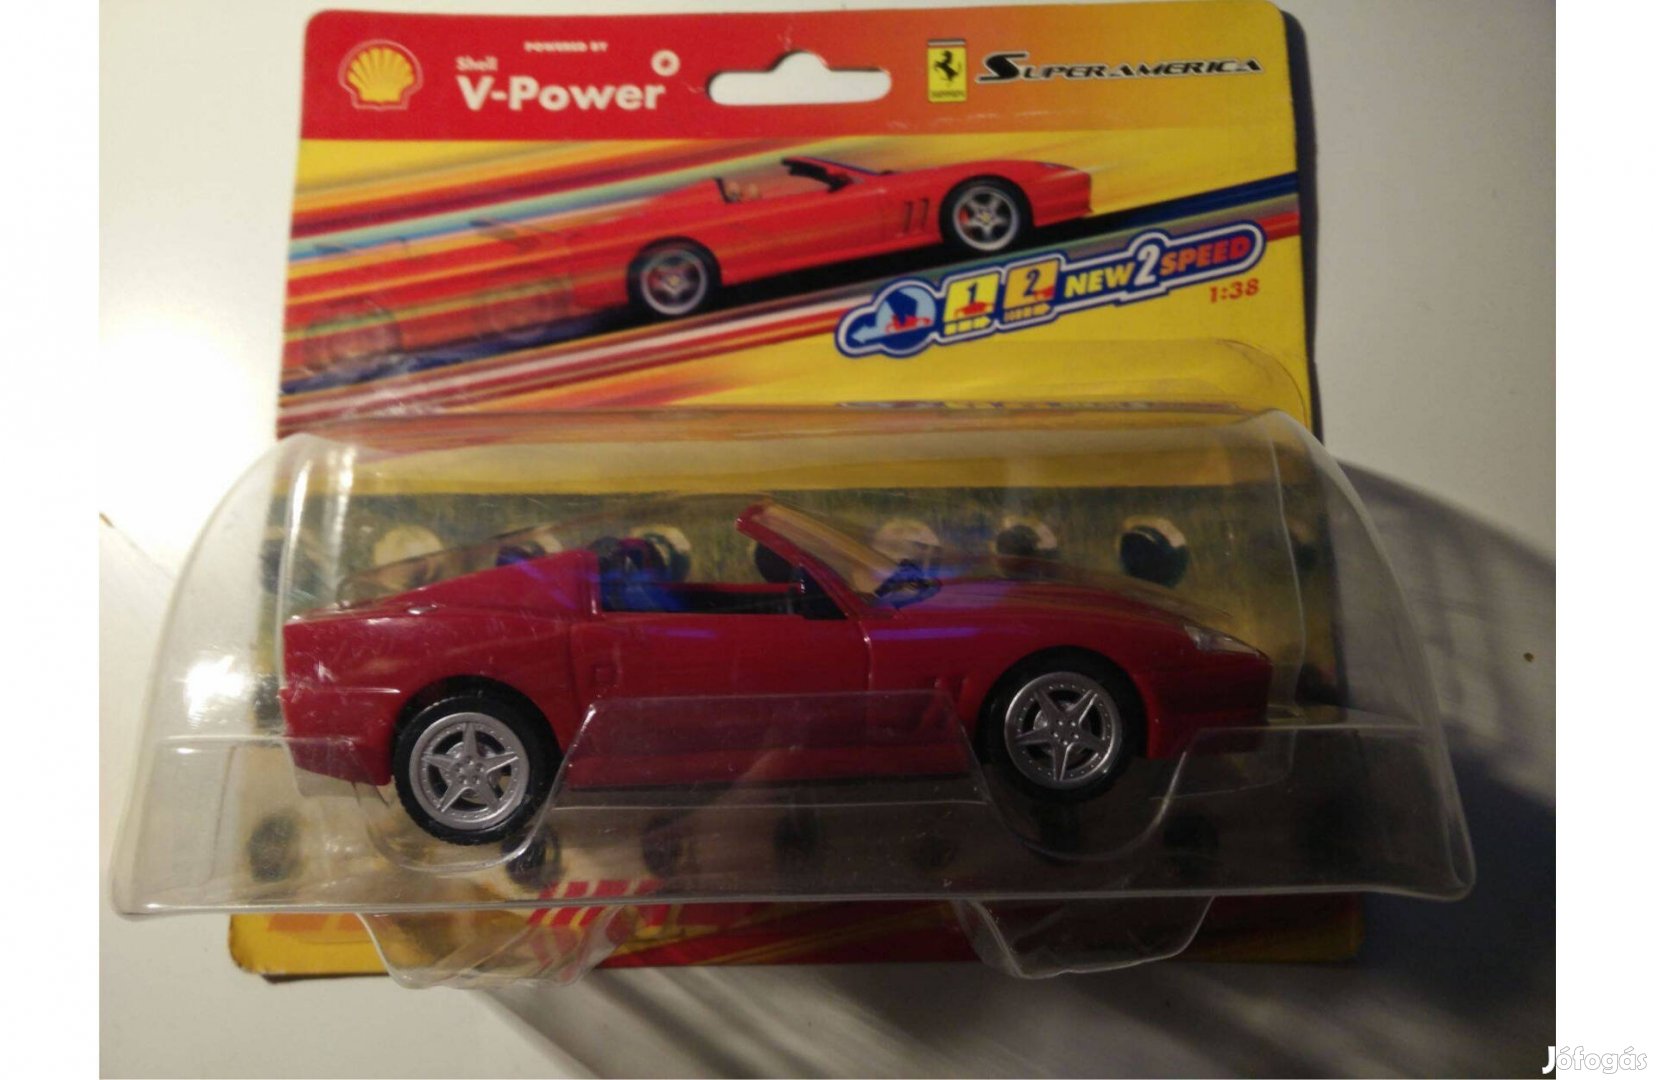 Shell V-Power Ferrari "Superamerica" 1:38 modell kisautó, bontatlan